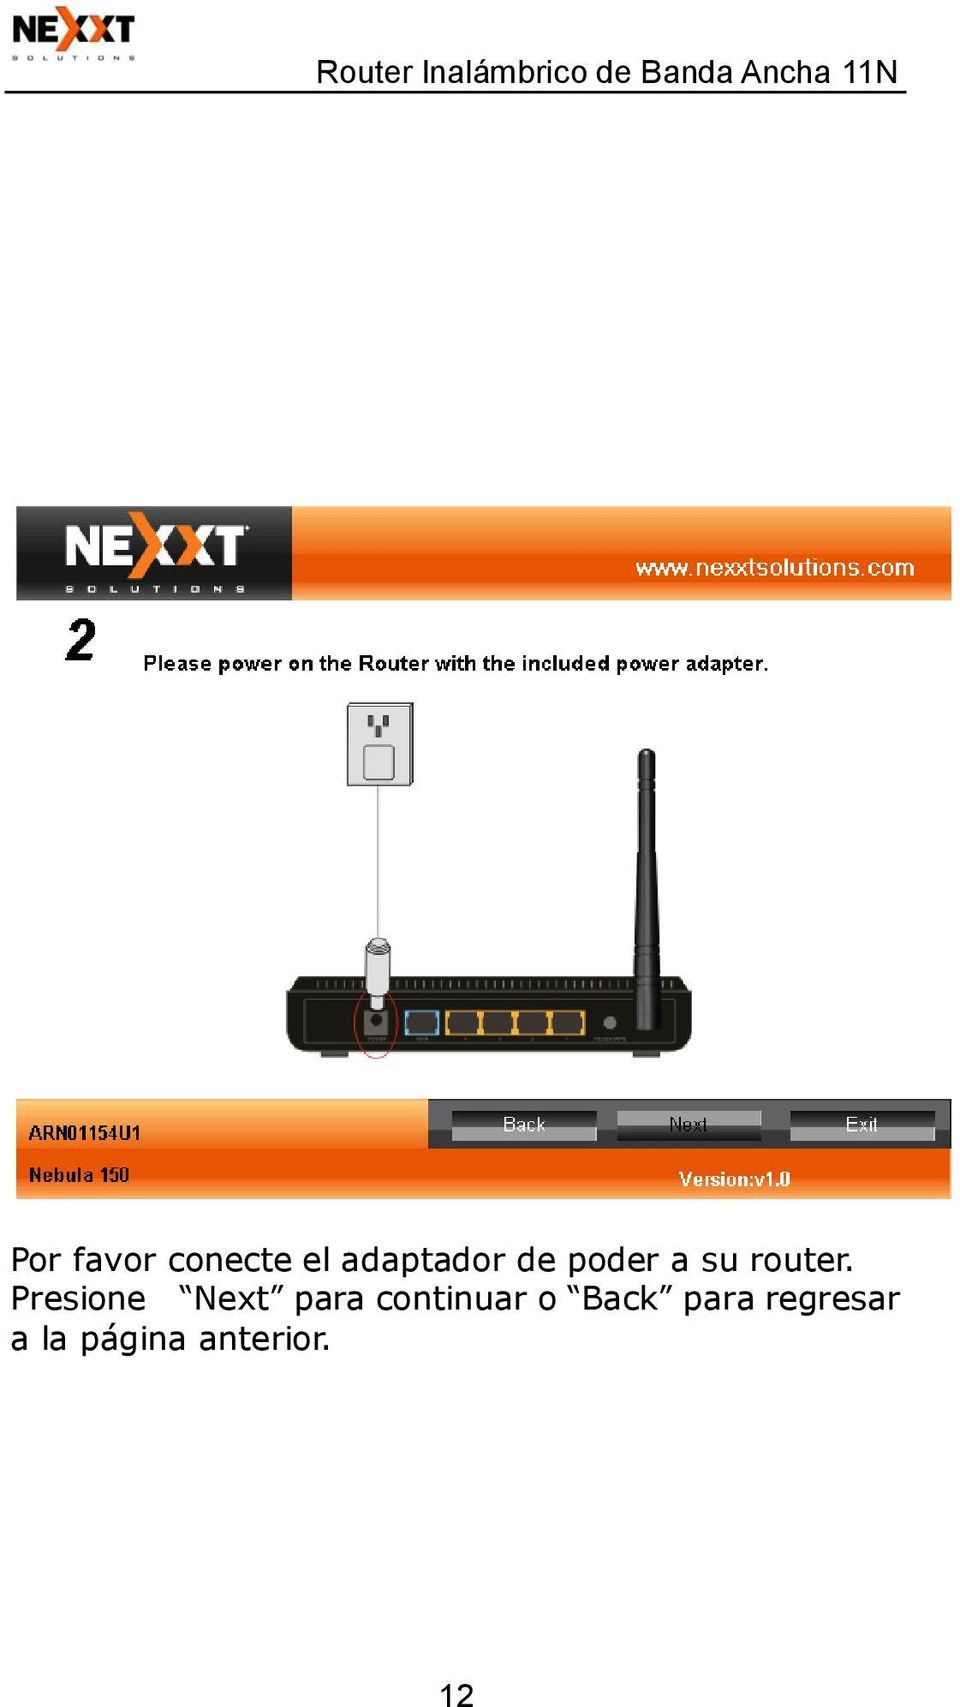 nexxt nebula 150 firmware